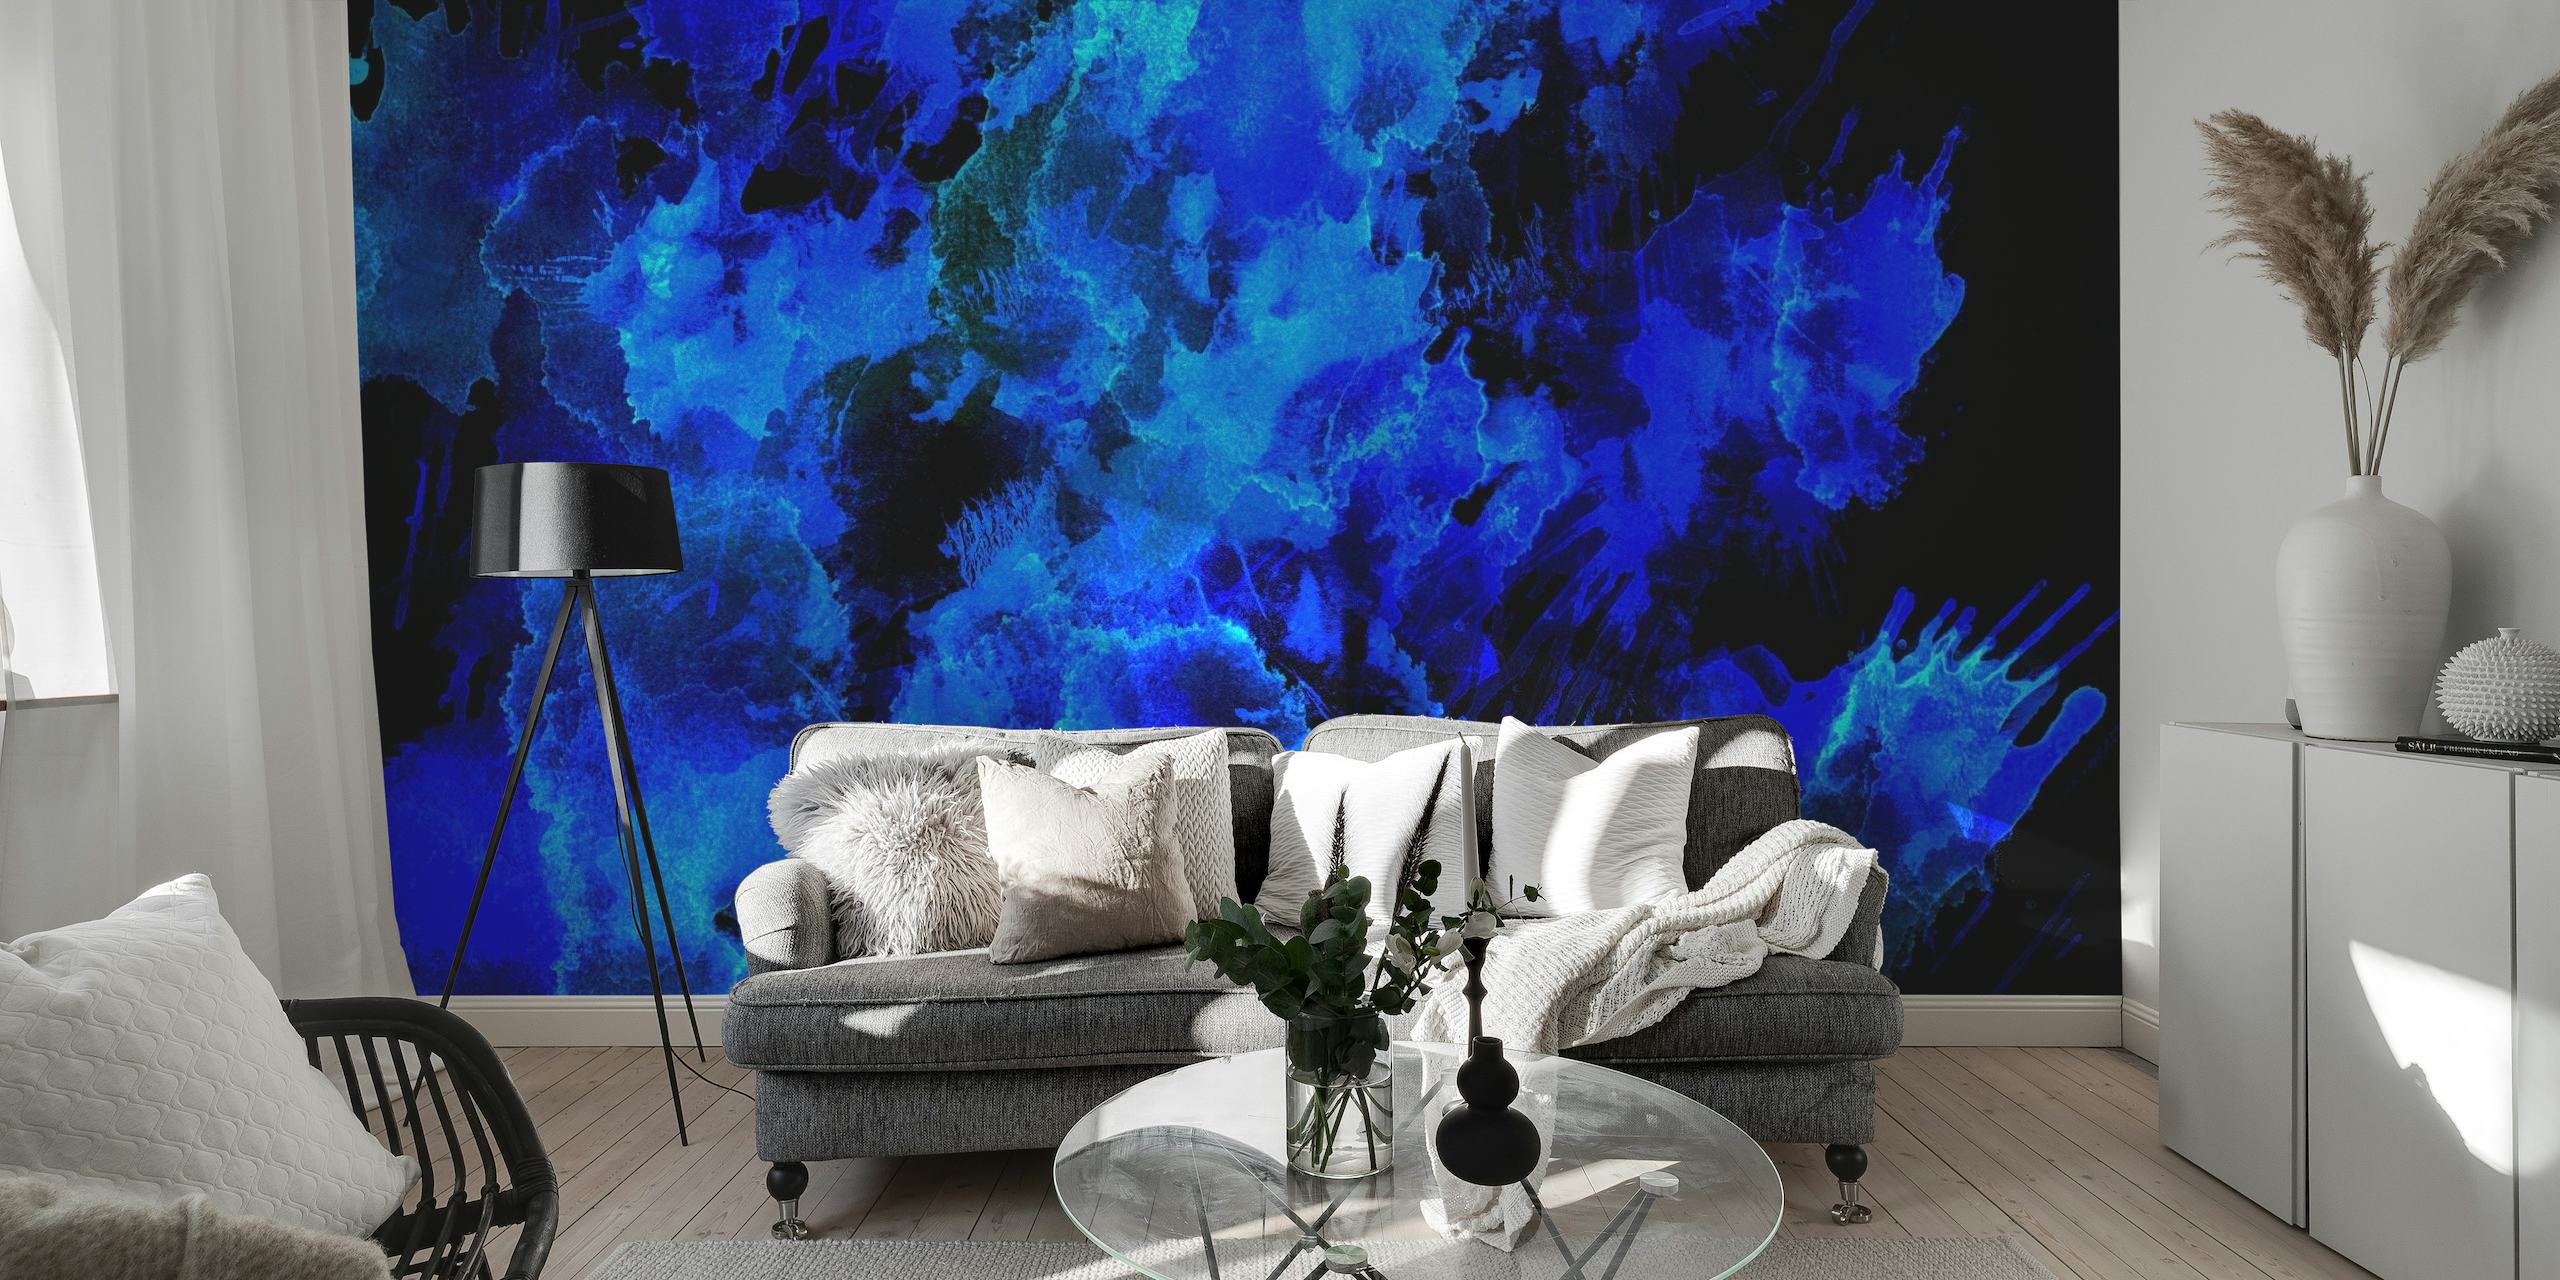 Mural abstracto en tonos azules que invoca la belleza del cielo nocturno o las profundidades del océano